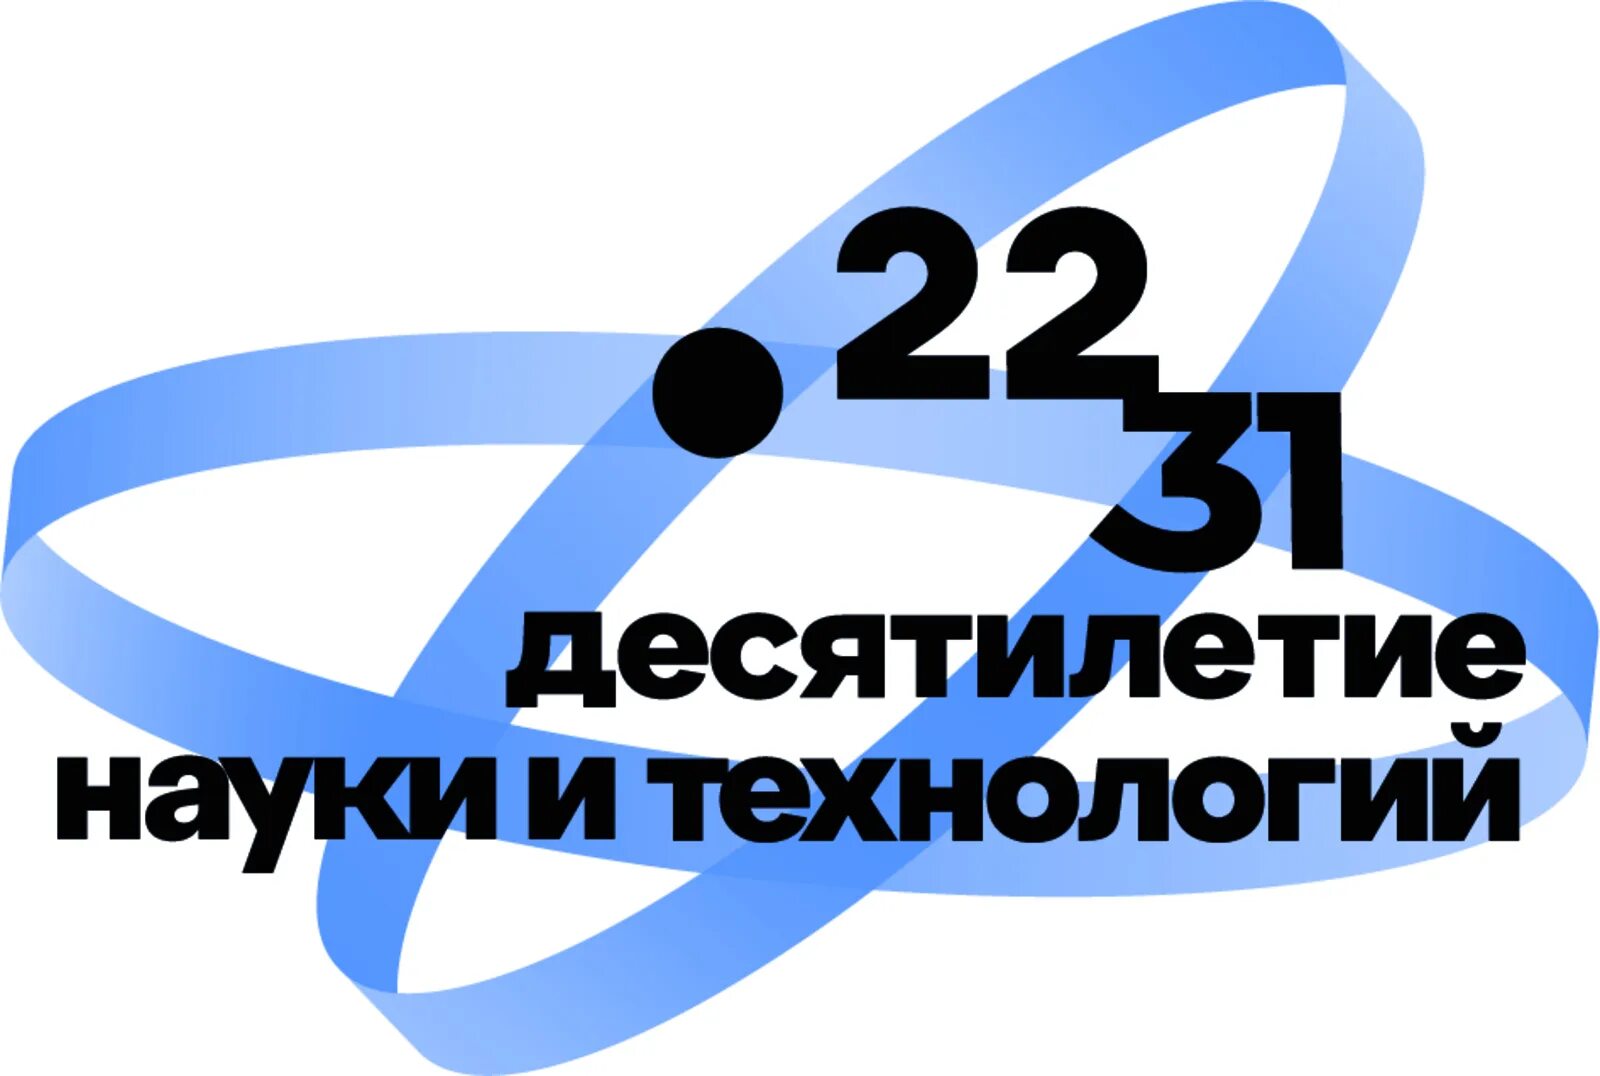 Десятилетие науки и технологий. Десятилетие науки и технологий логотип. Десятилетие науки и технологий 2023. 10 Летие науки и технологии в России.